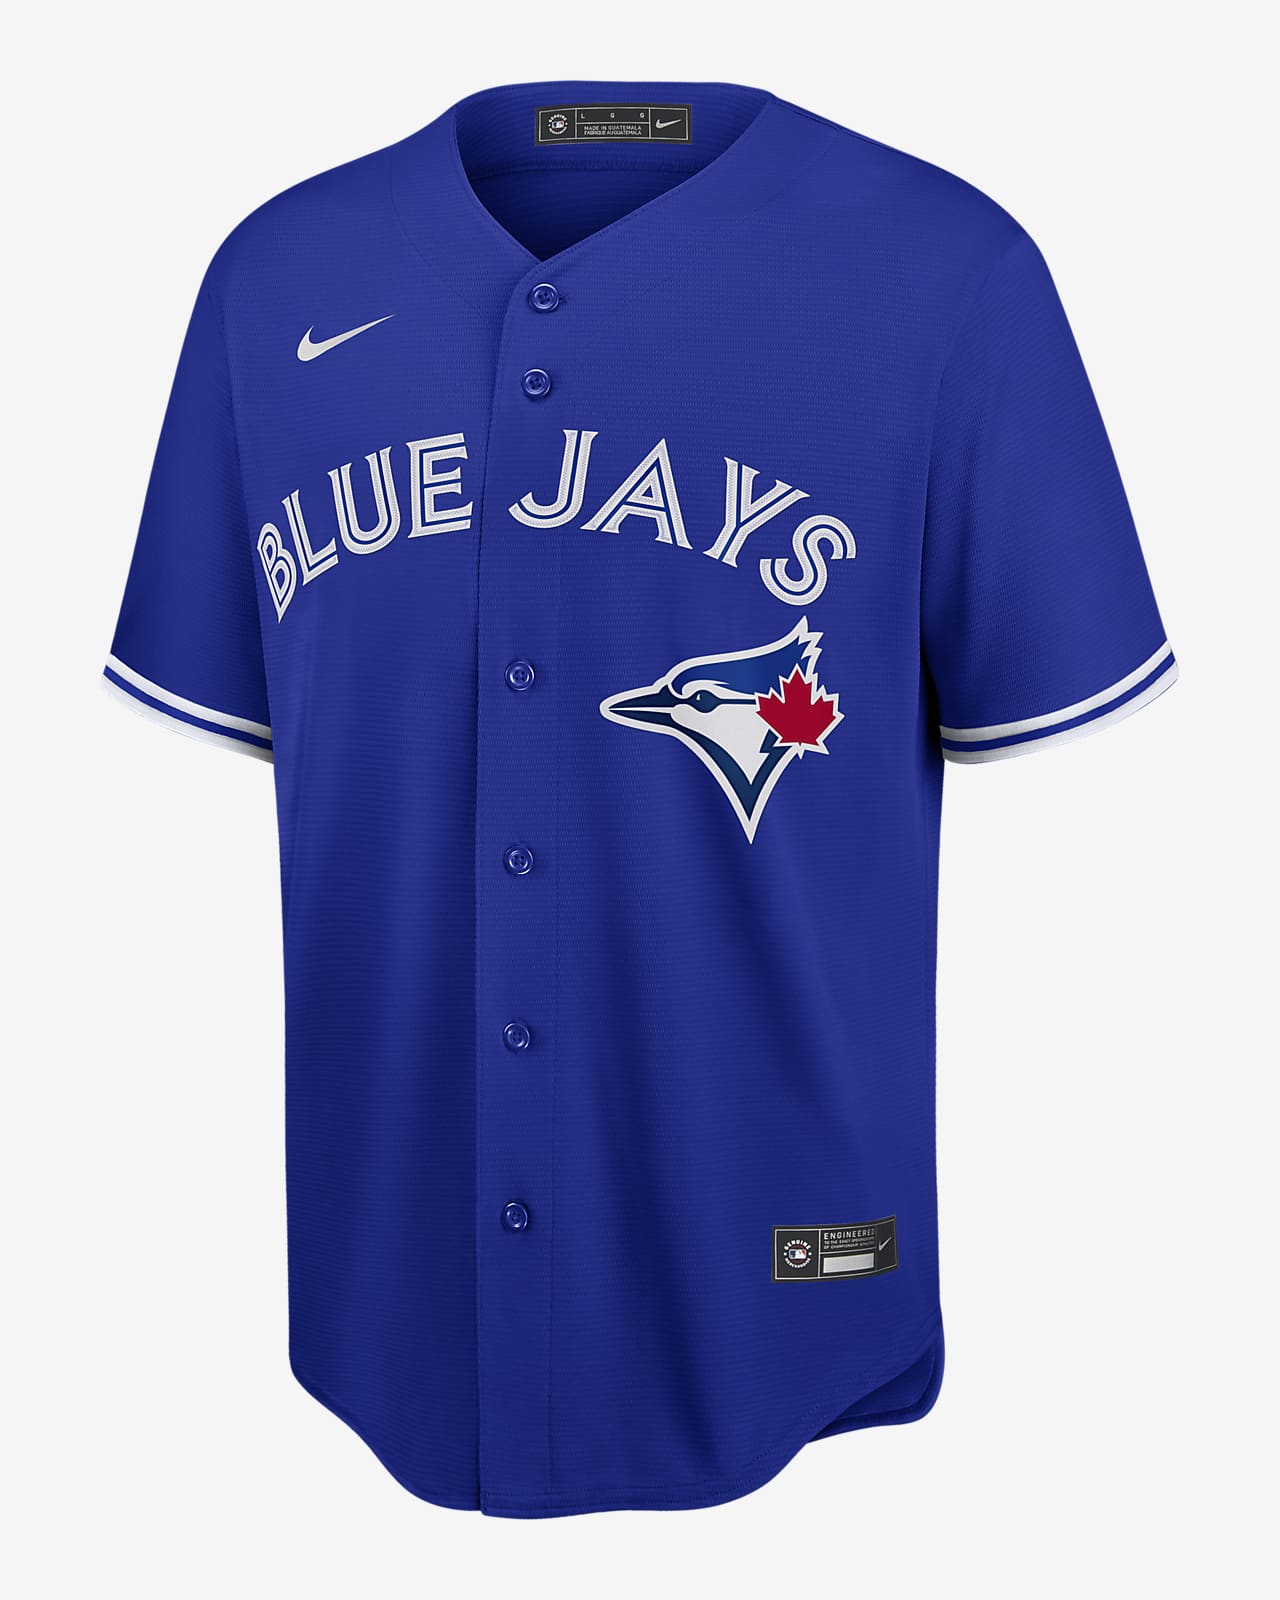 MLB Toronto Blue Jays (Vladimir Guerrero) Men's Replica Baseball Jersey